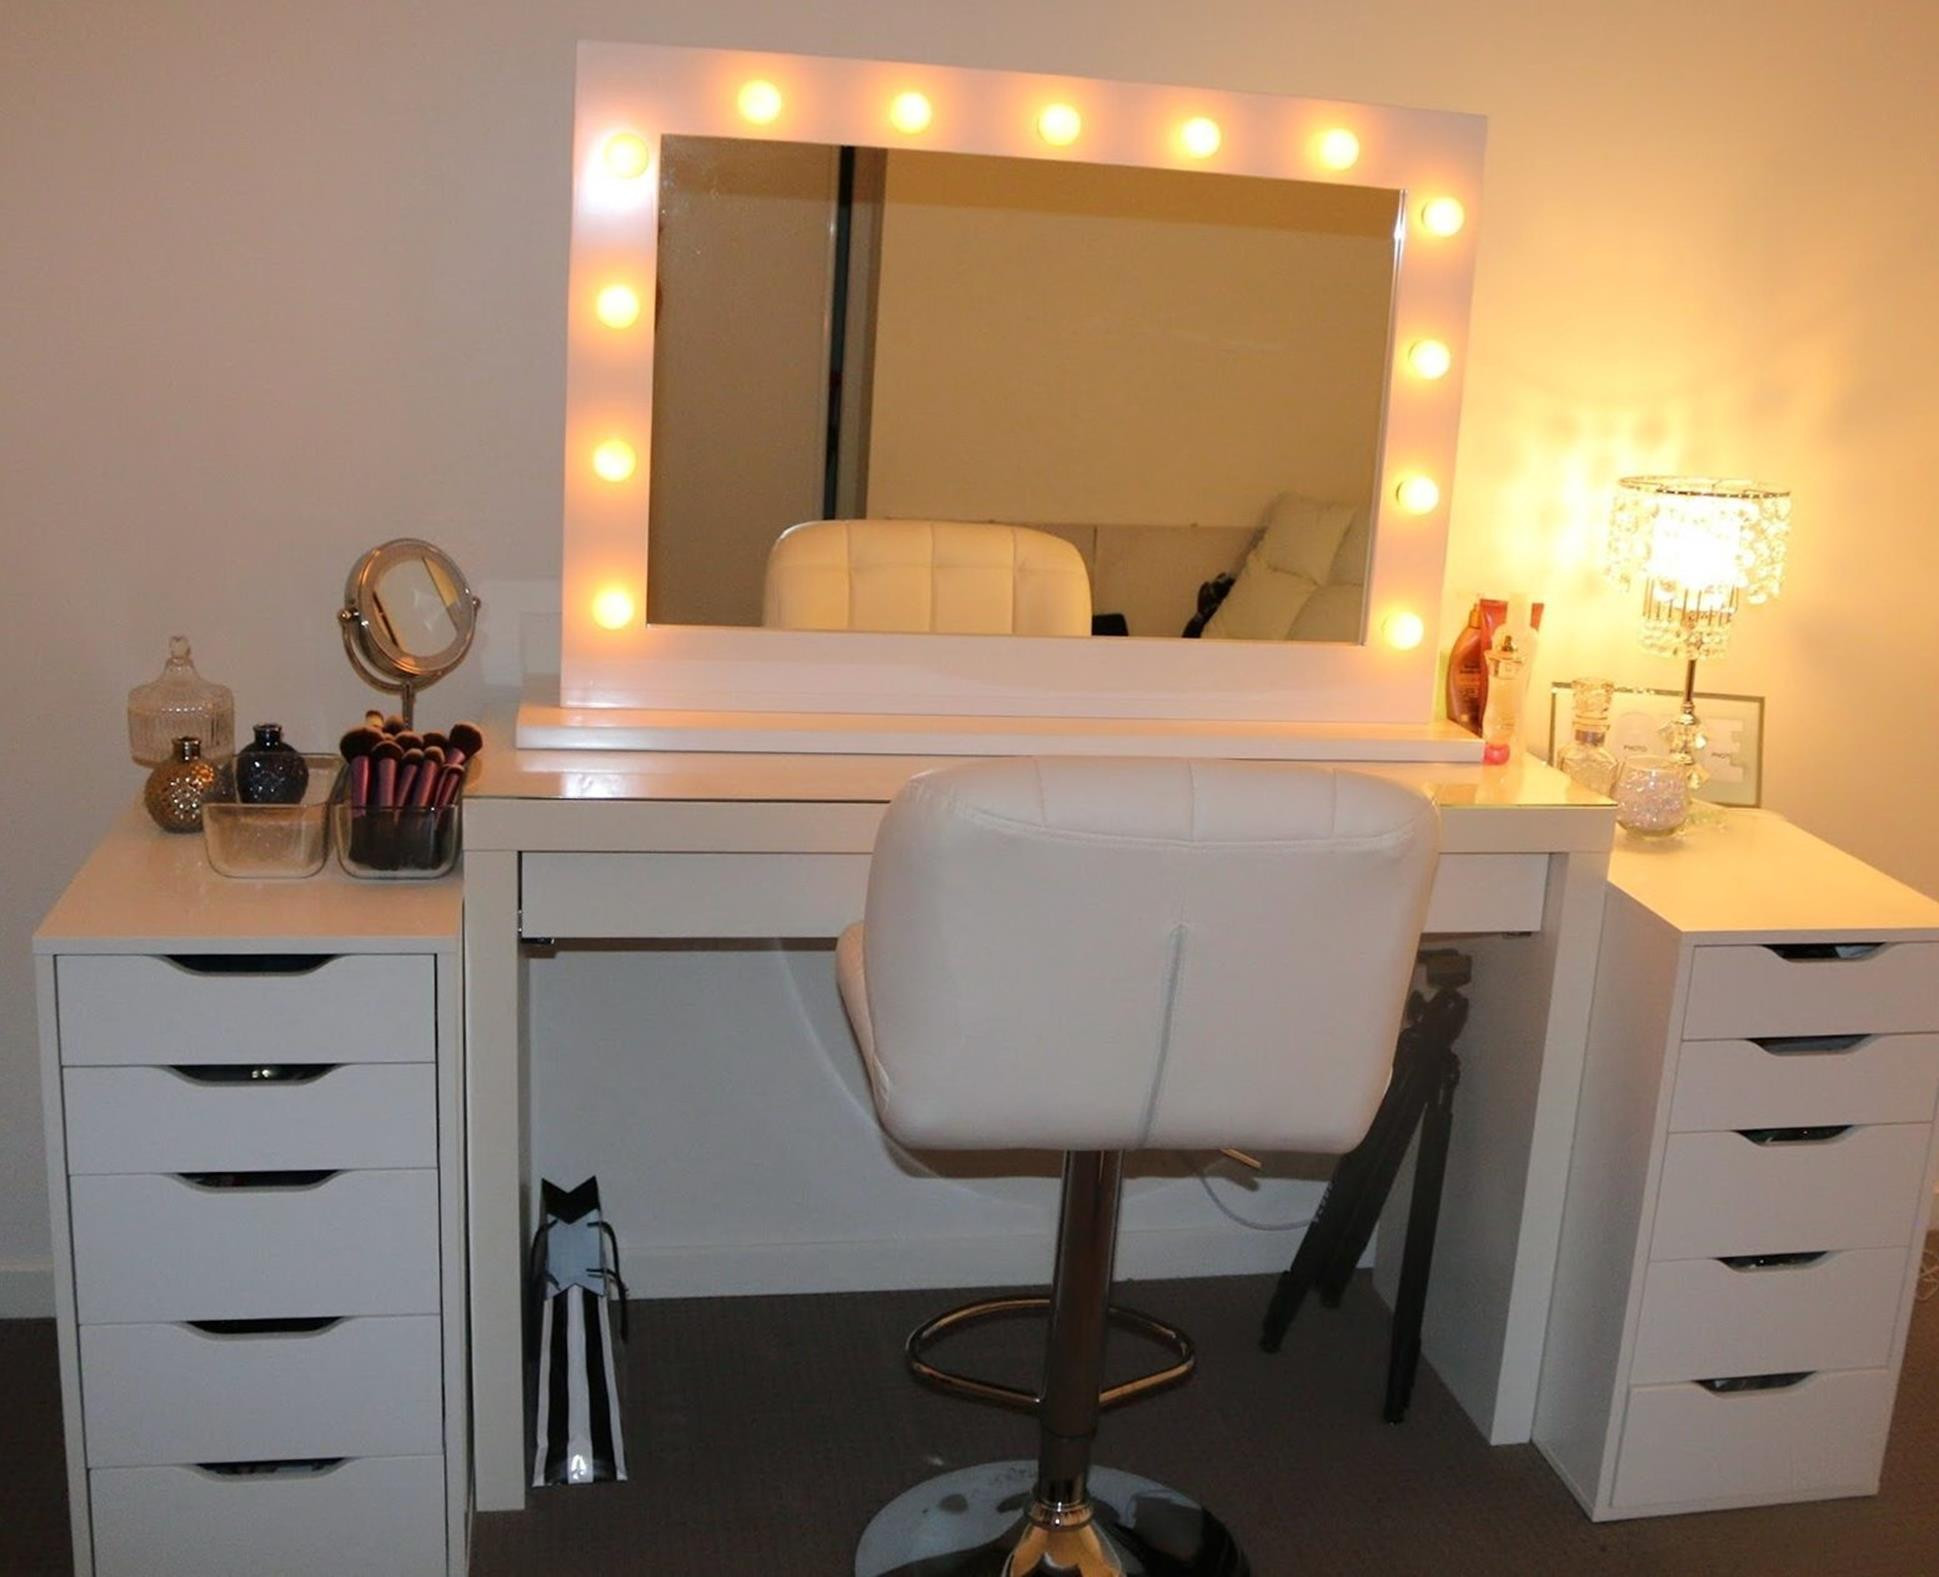 Bedroom Vanity Set With Lights
 Bedroom Vanity Set With Lights Around Mirror 25 Gon ech